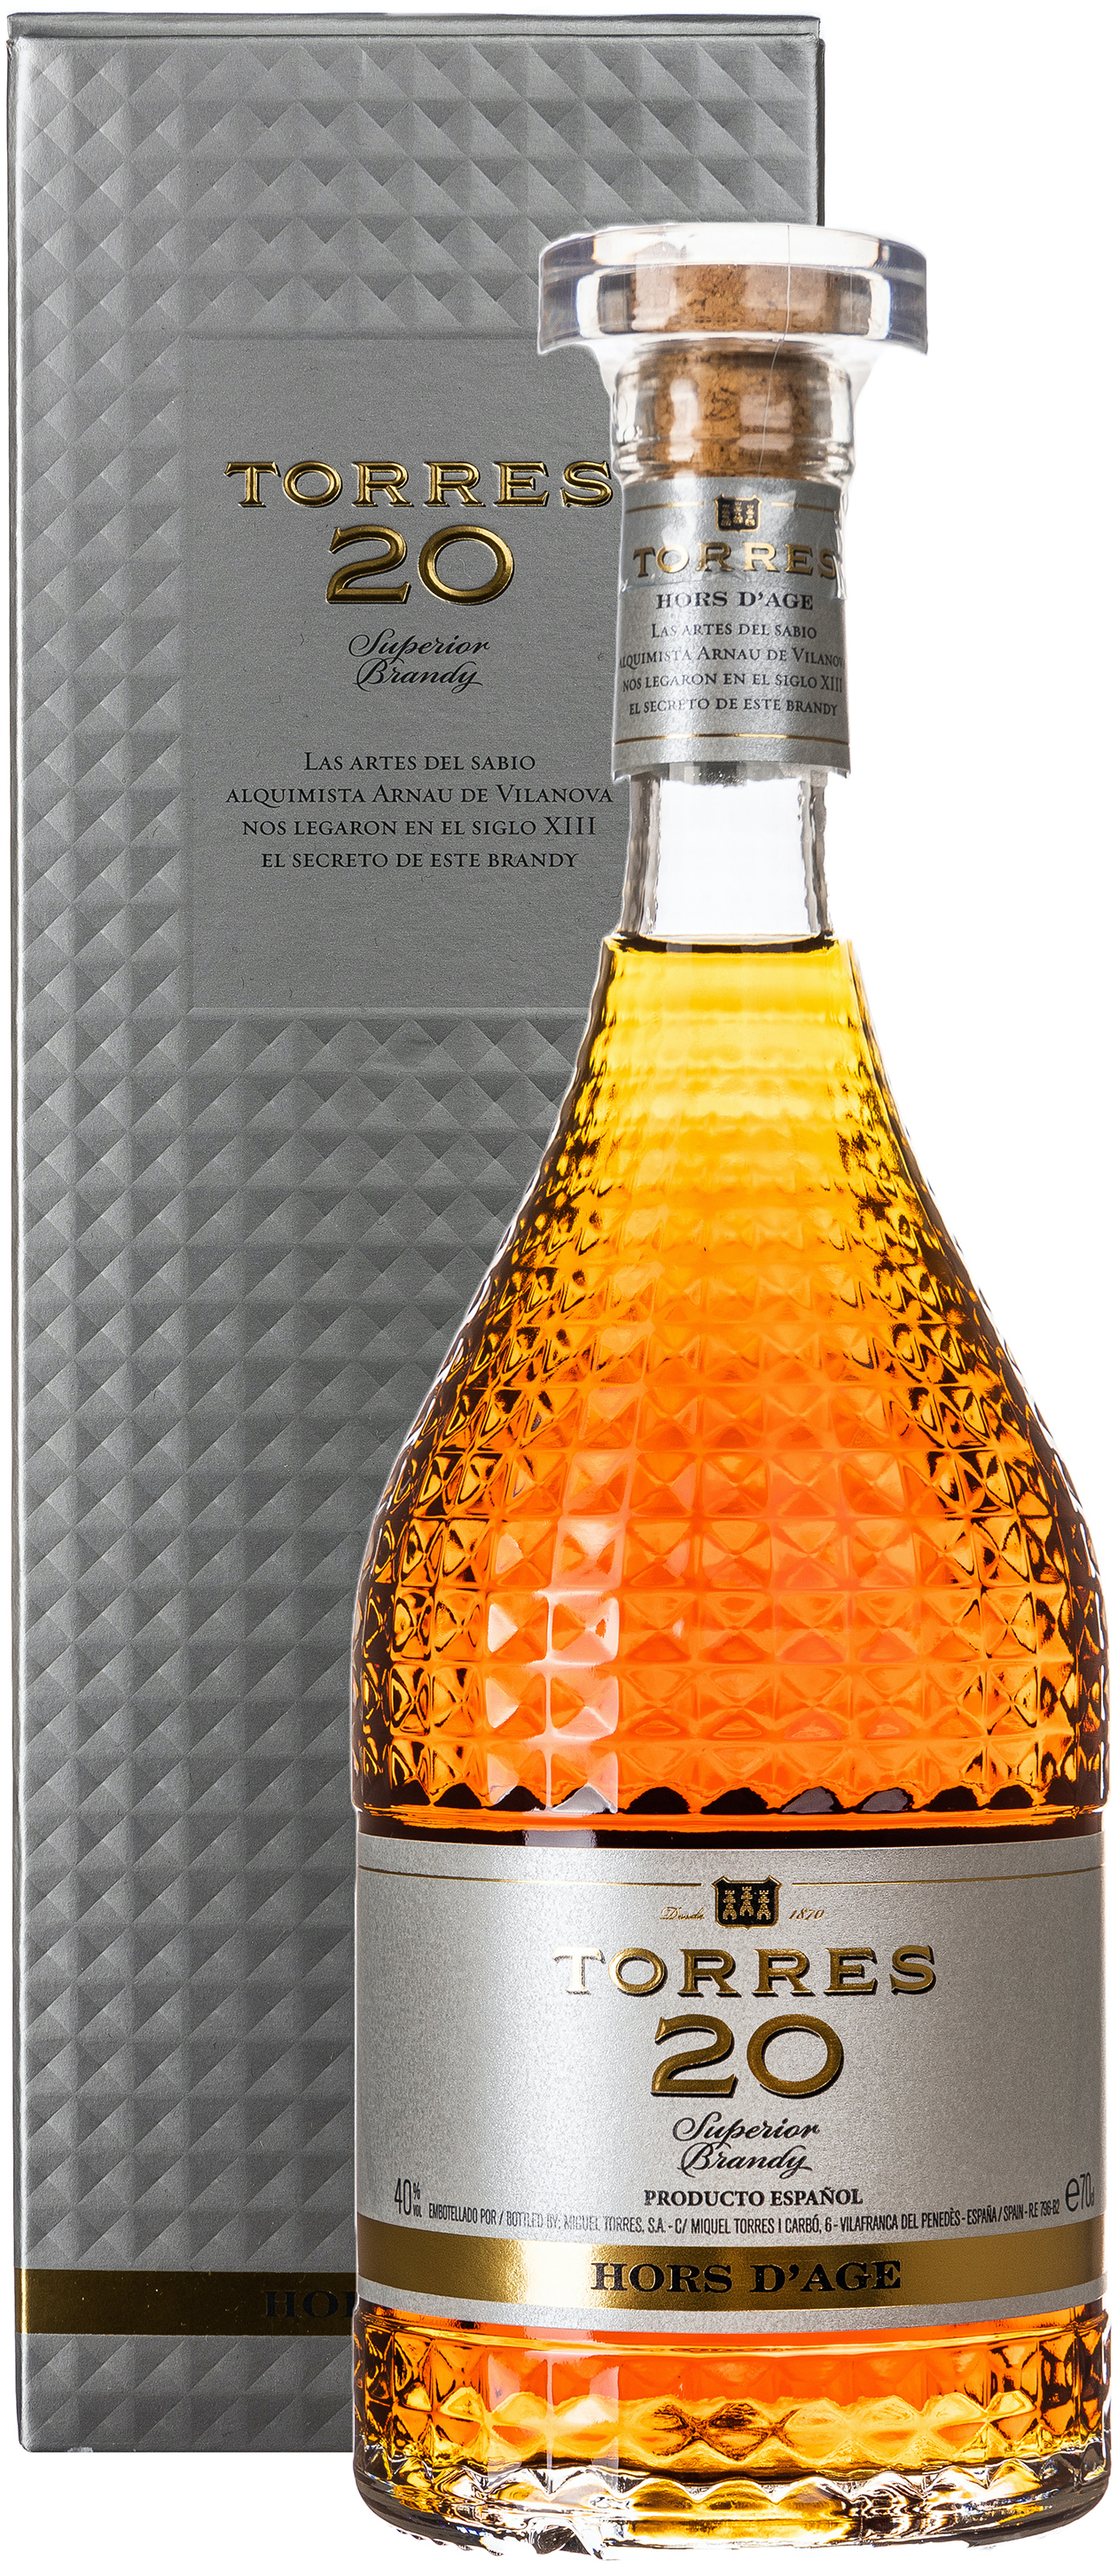 Torres 20 Superior Brandy 40% vol. 0,7L